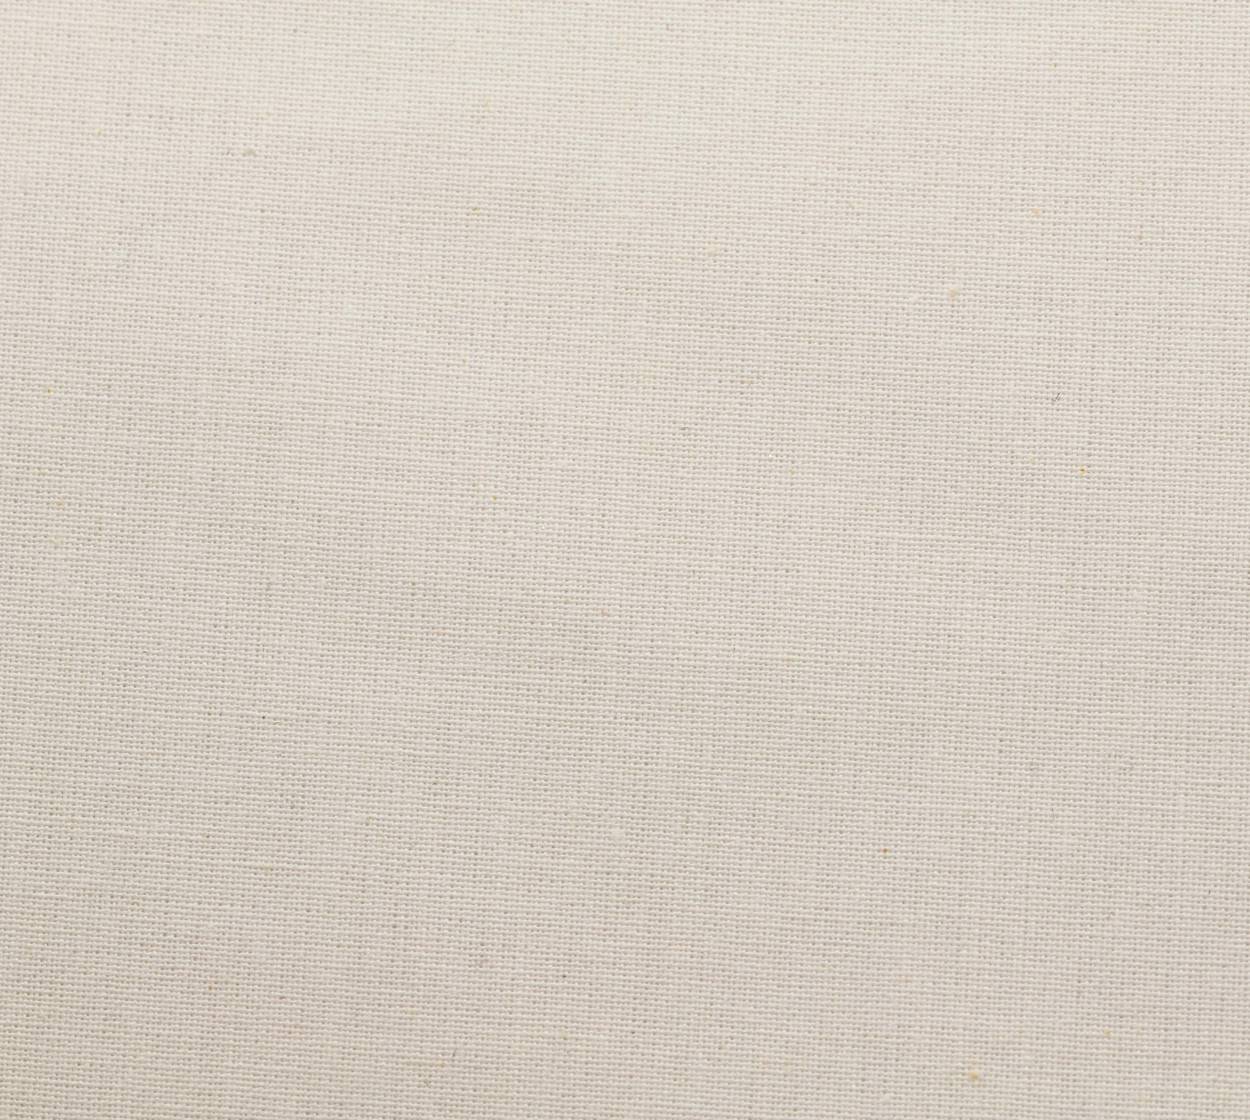 Nessel Baumwolle, weiß, 10,00 m breit, 6N19 im Stamm online Store München